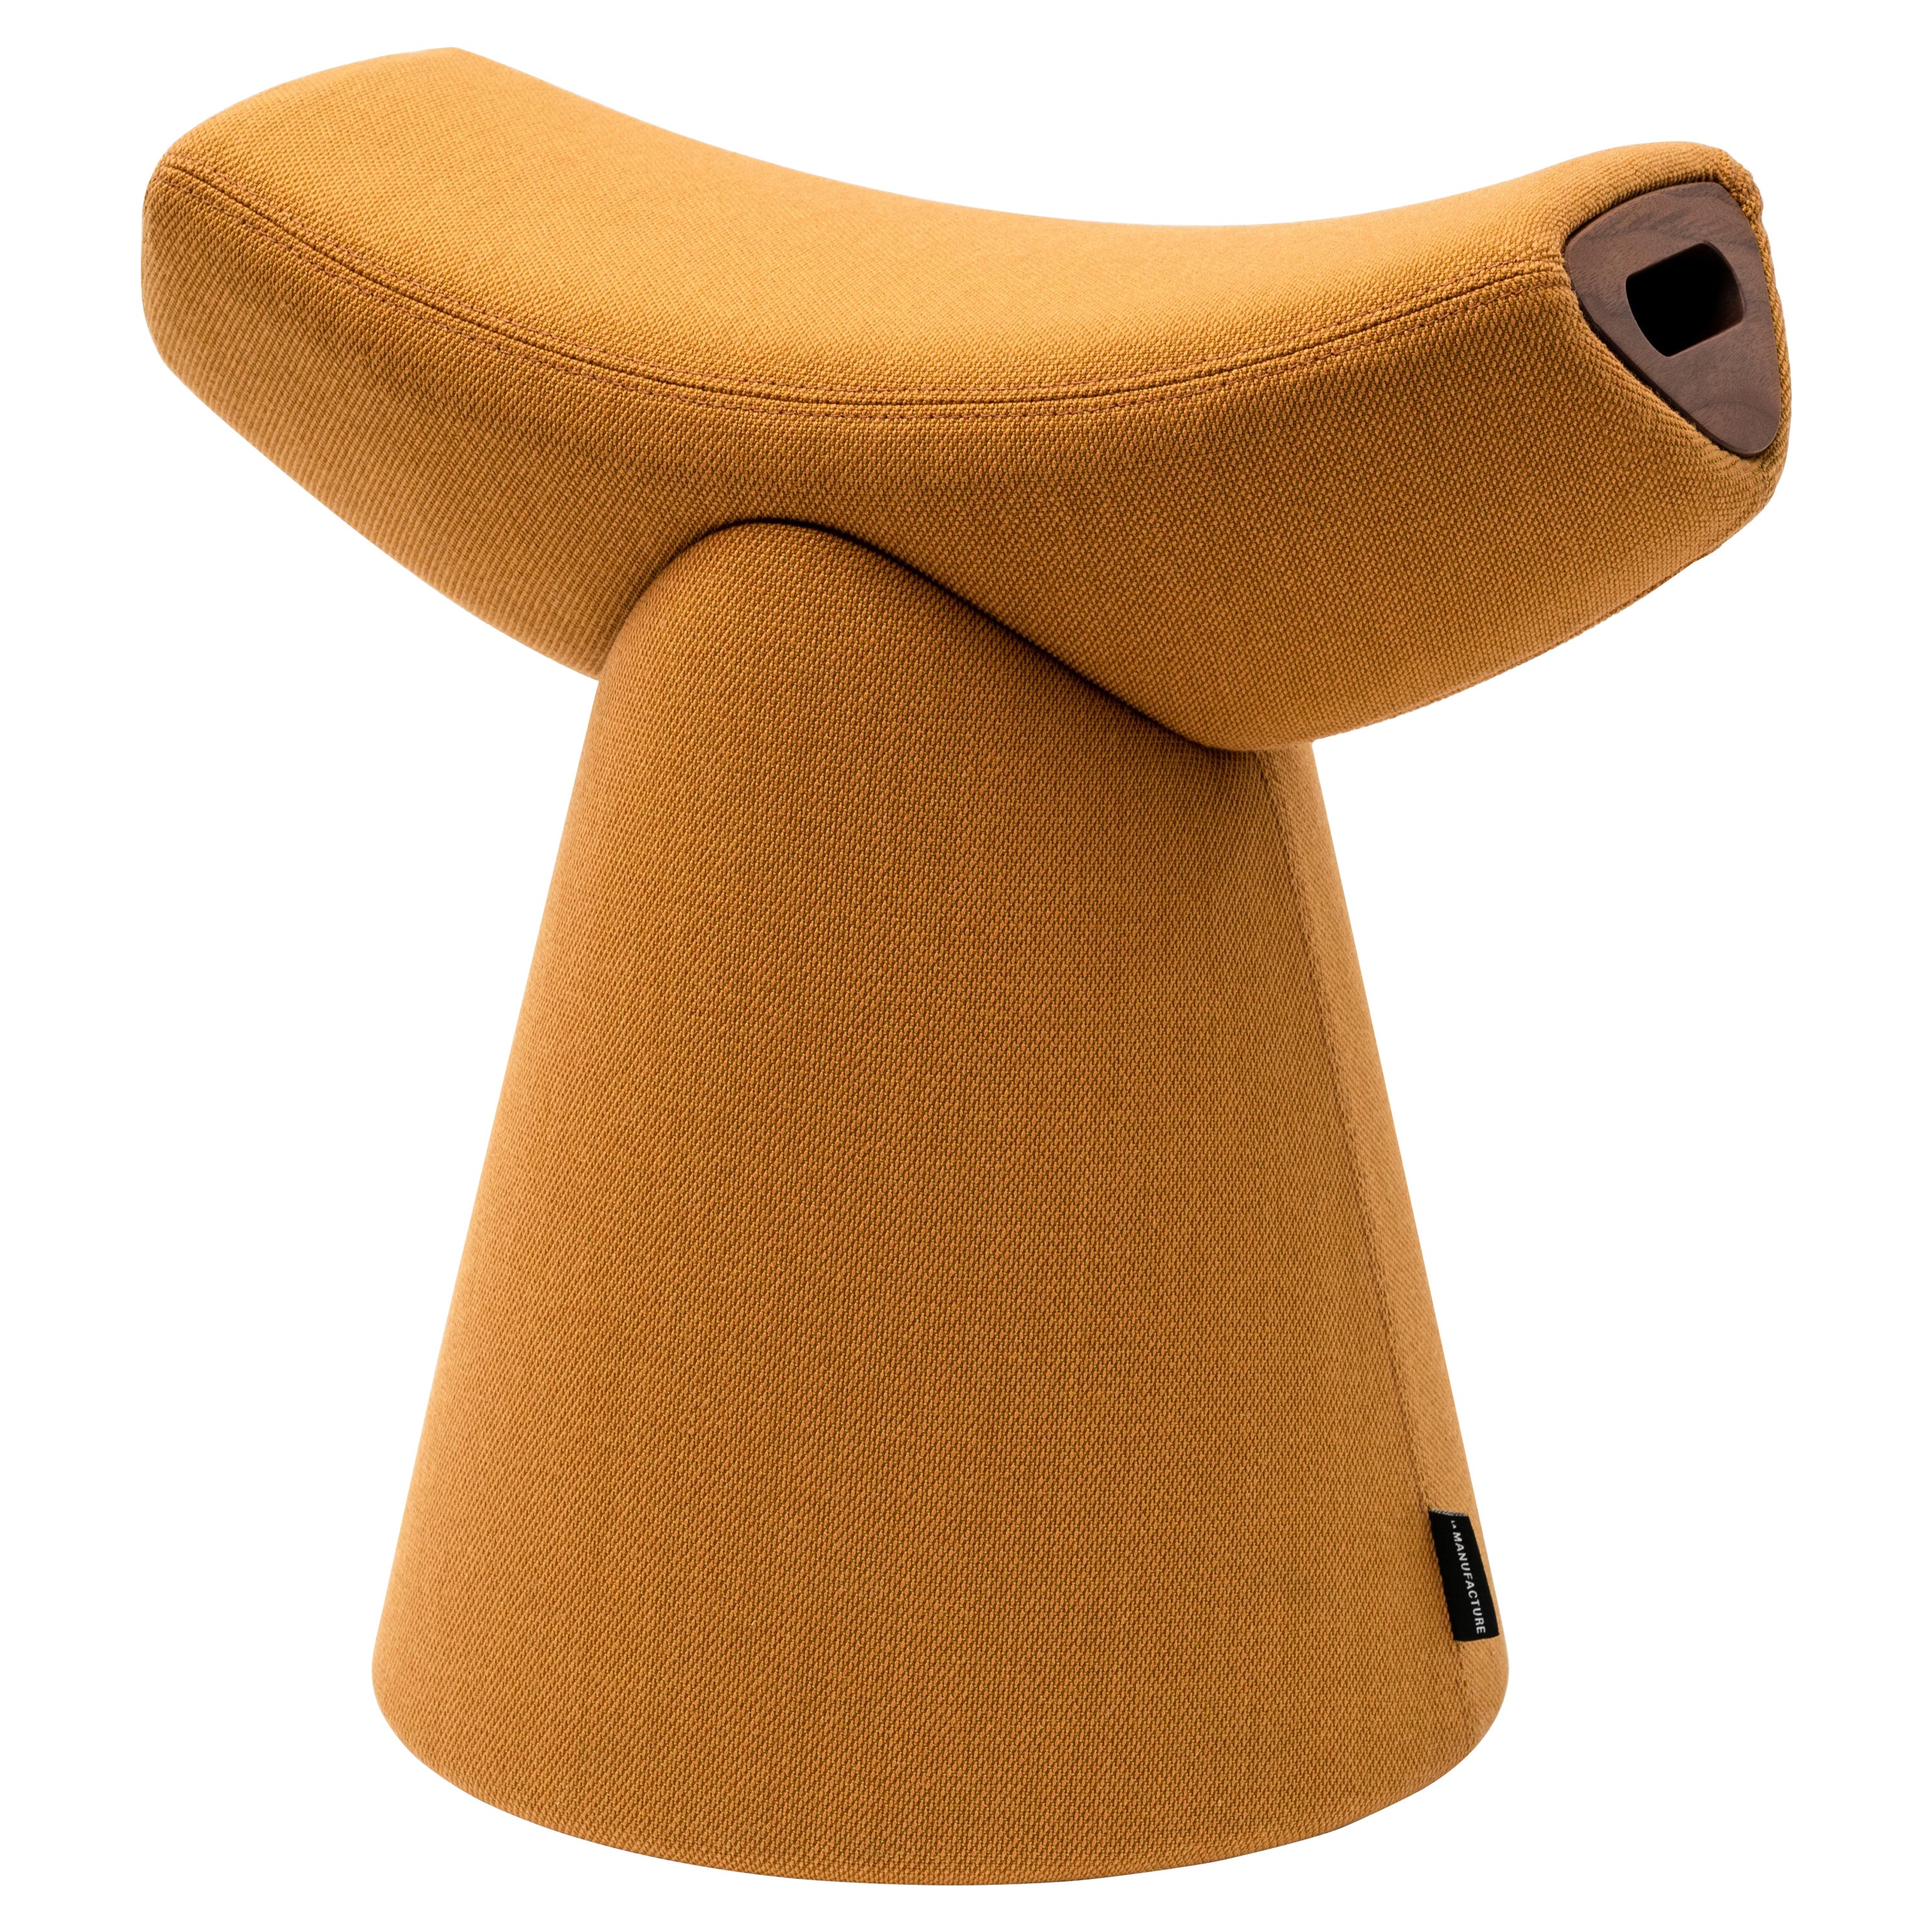 La Manufacture-Paris Gardian Stool with Handle Designed by Patrick Norguet